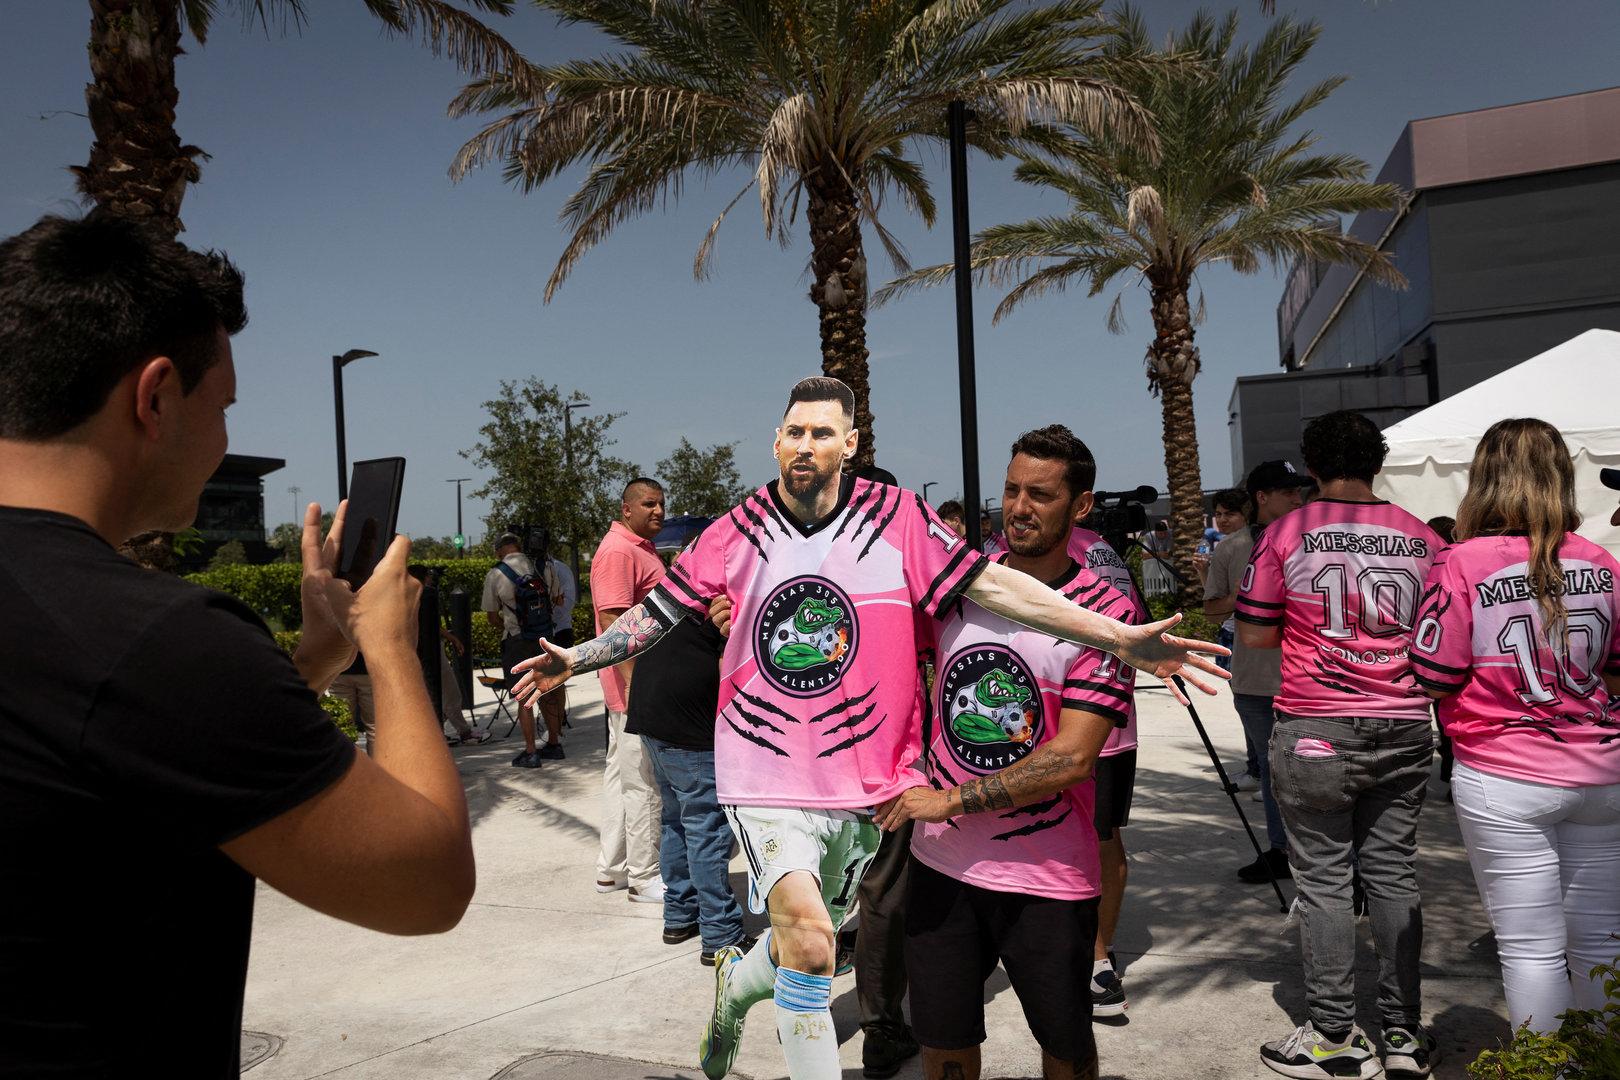 Fußball: Miami steht Kopf, weil Superstar Messi schon gelandet ist